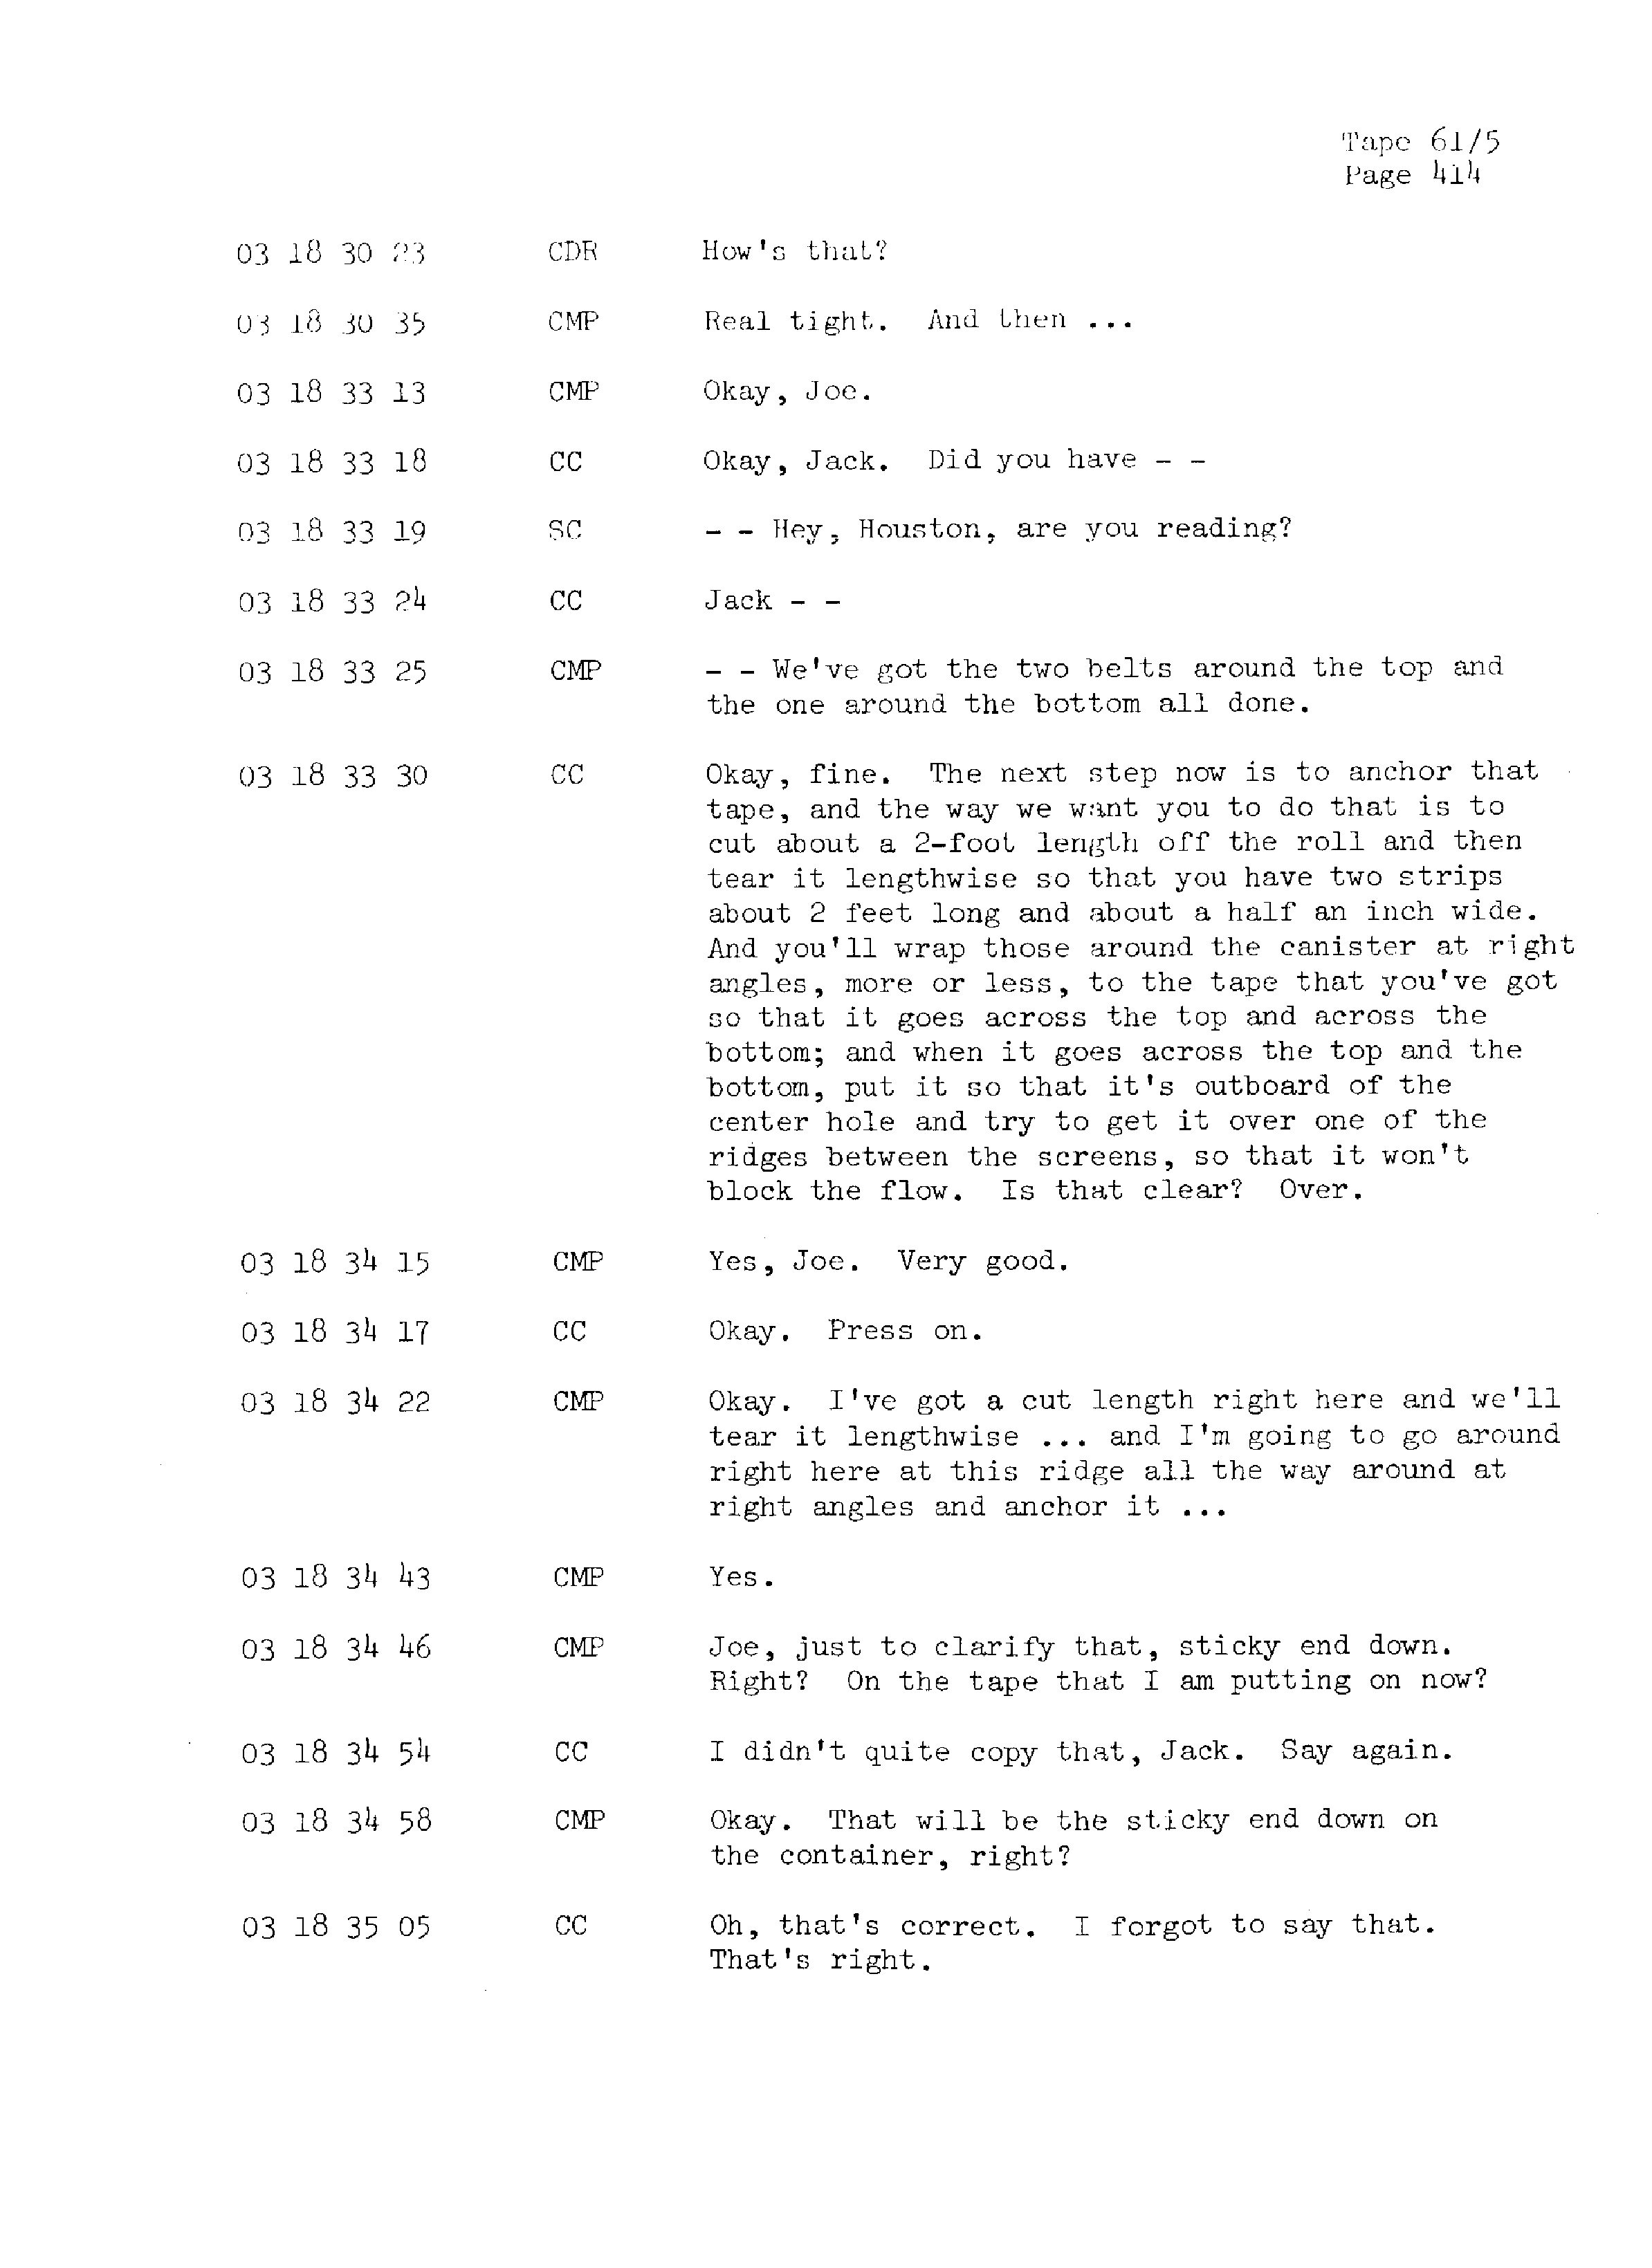 Page 421 of Apollo 13’s original transcript